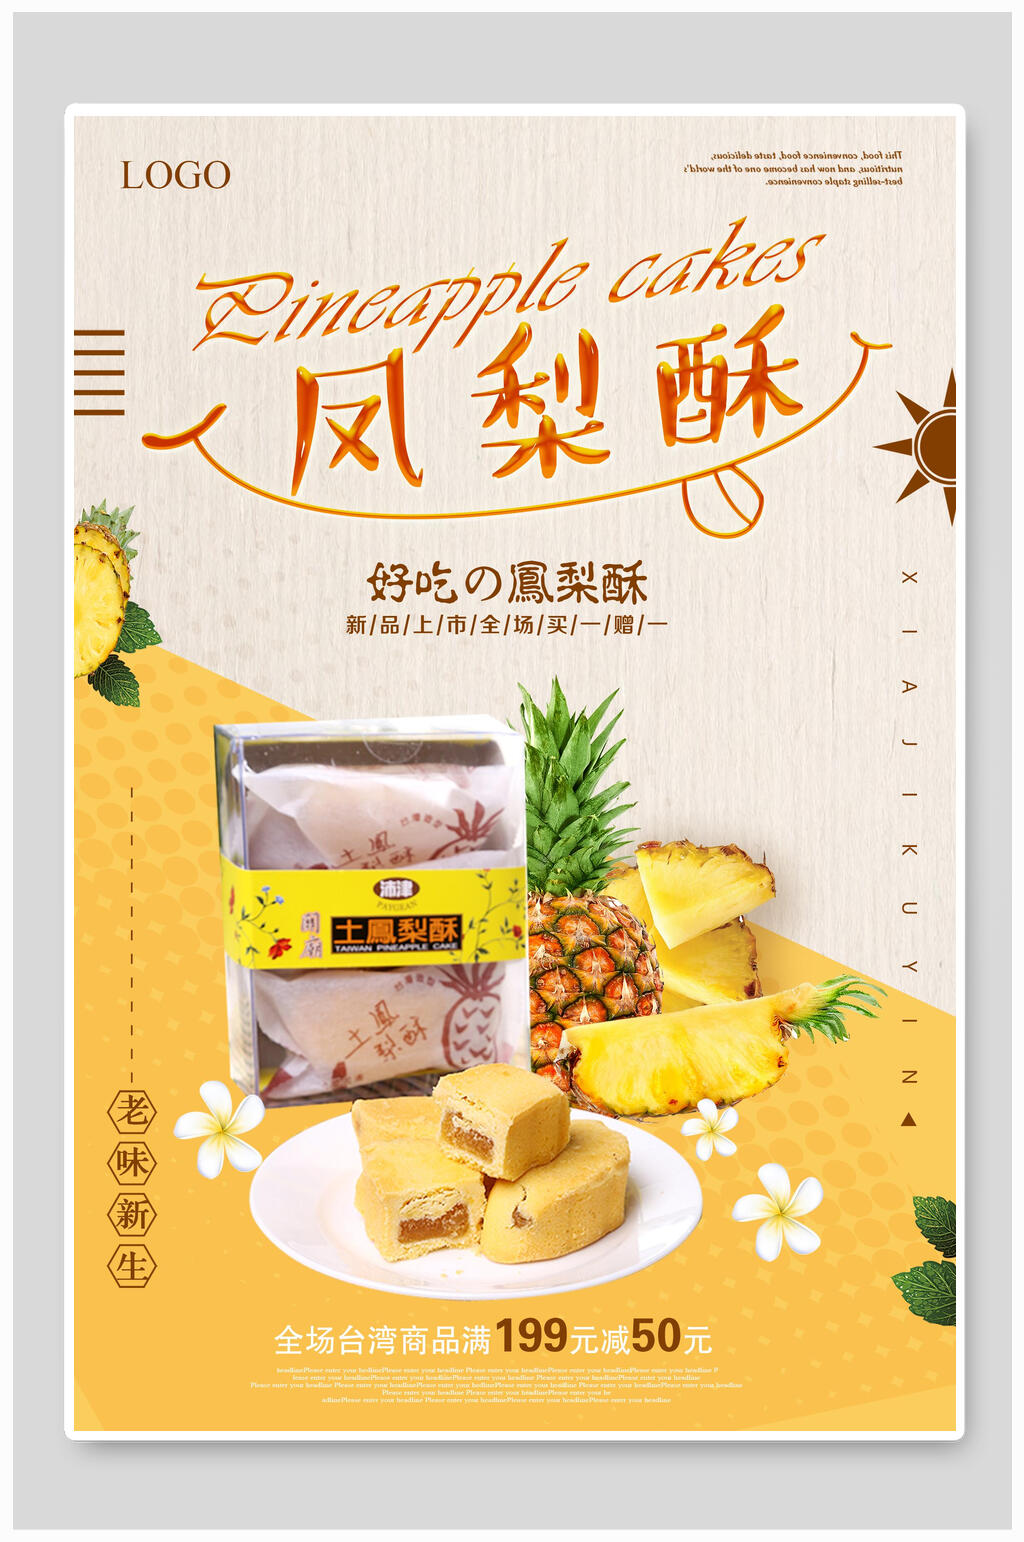 好吃的凤梨酥台湾海报